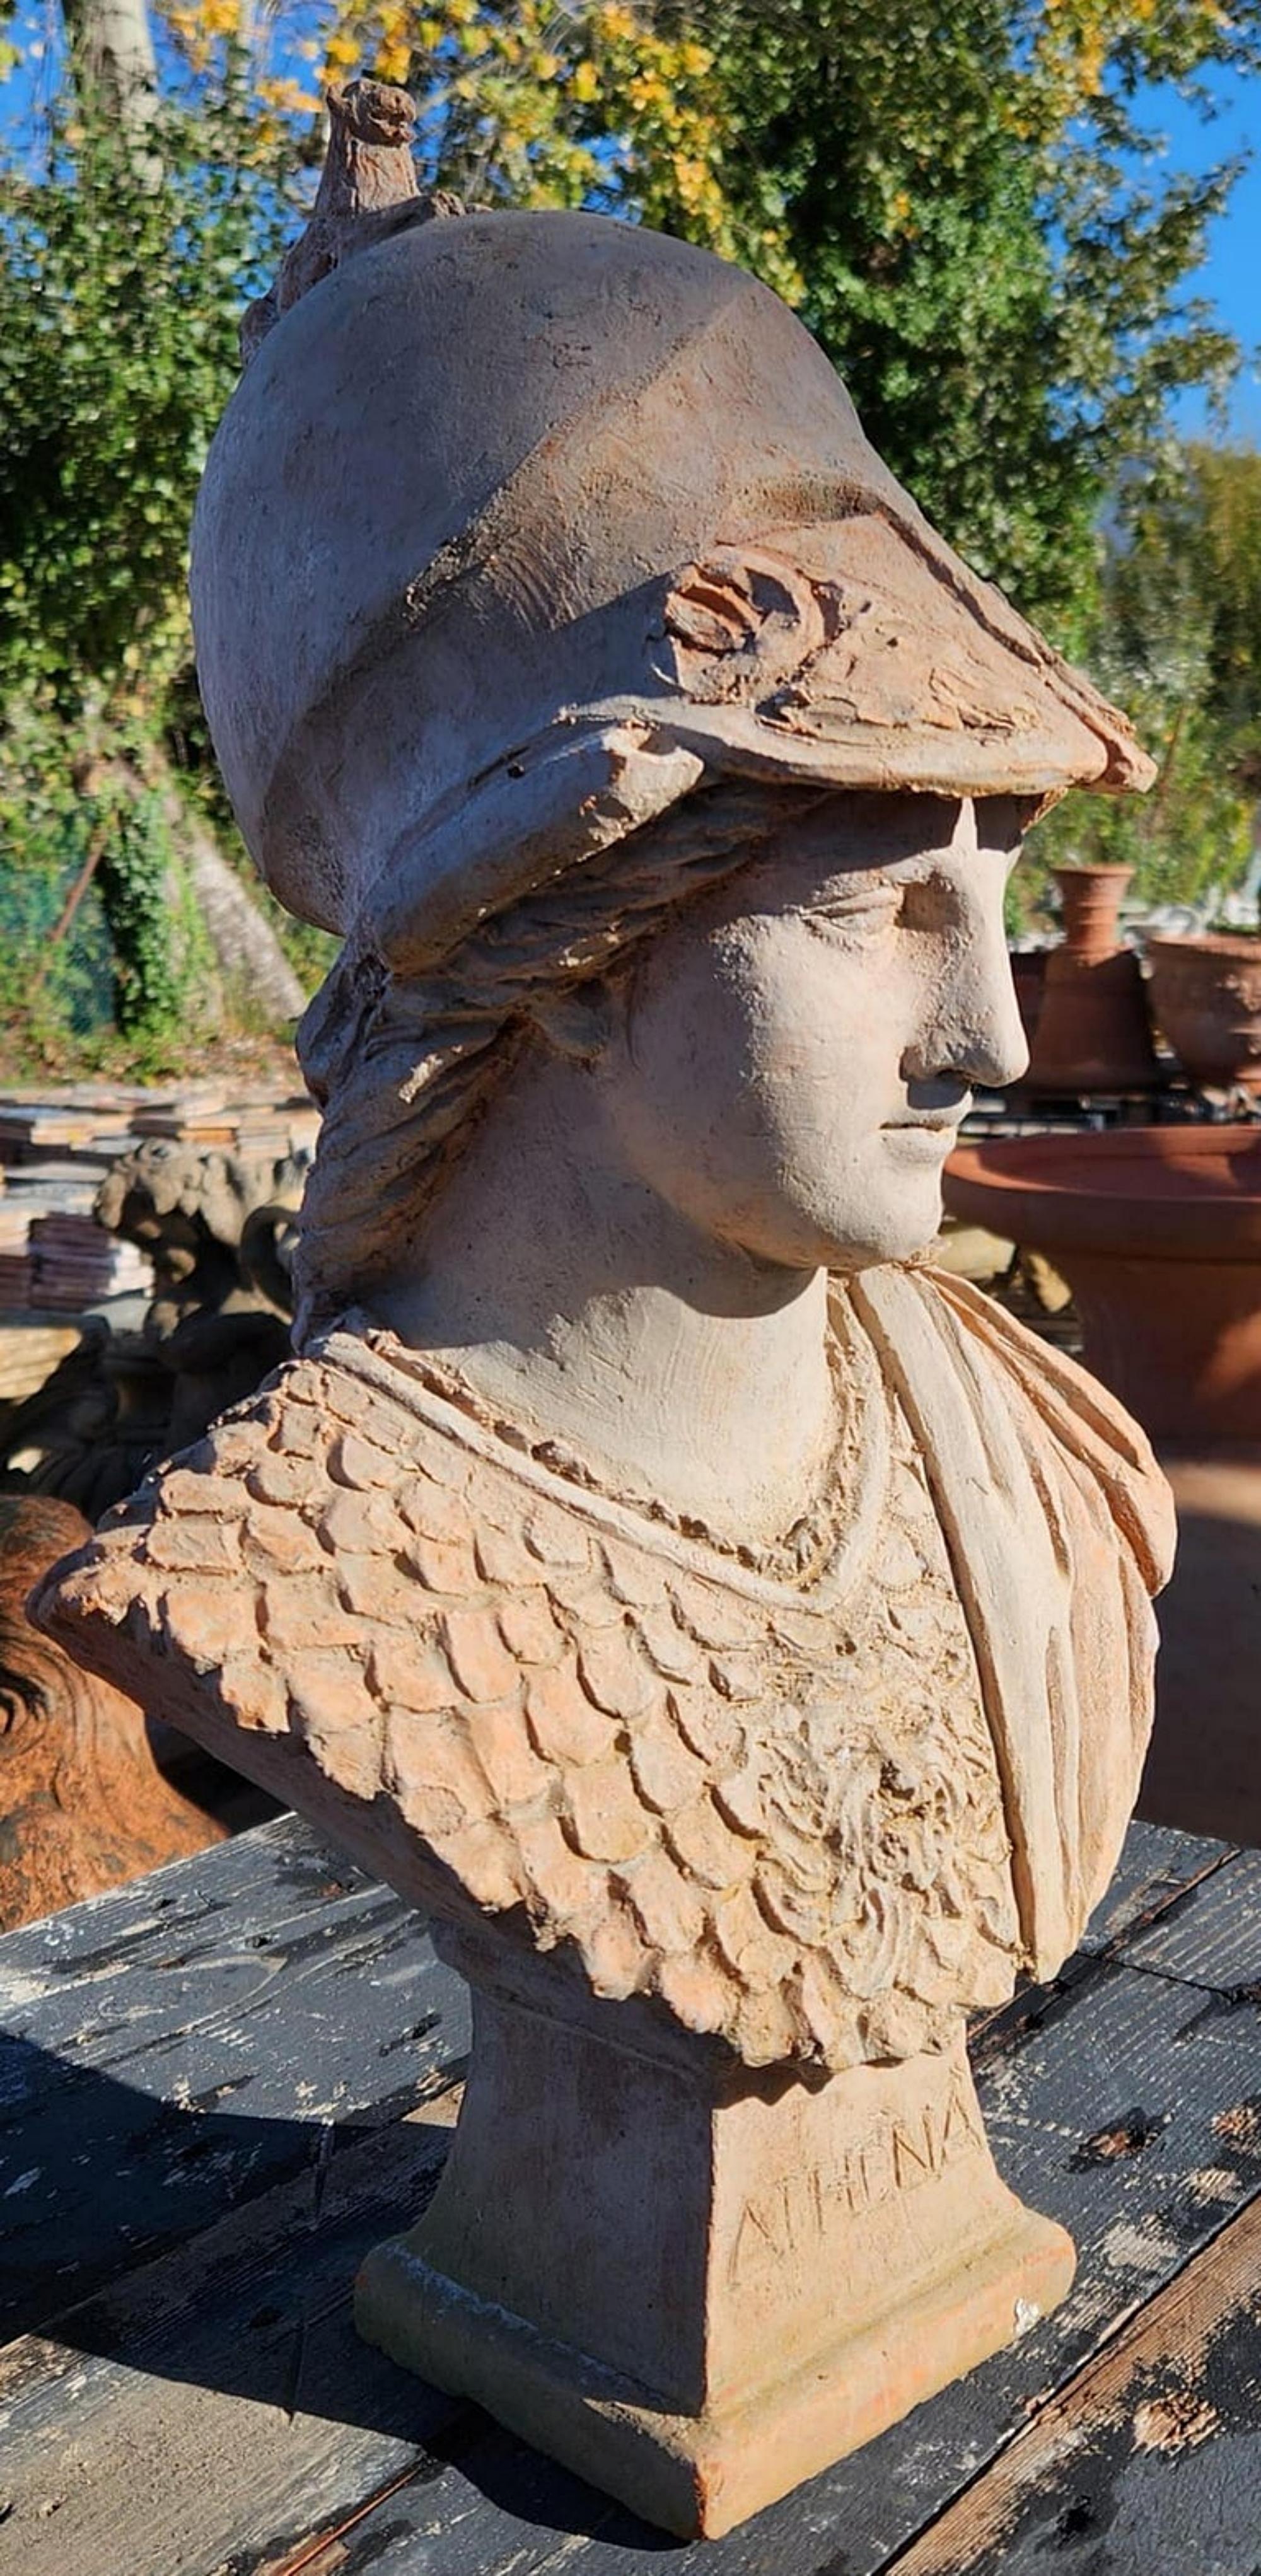 Tête d'athéna Giustiniani en terre cuite patinée début 20ème siècle.

L'Athena-Minerva Giustiniani est une copie romaine de l'époque antonine d'un original grec représentant Pallas Athéna exécuté entre la fin du Ve et le début du IVe siècle av.